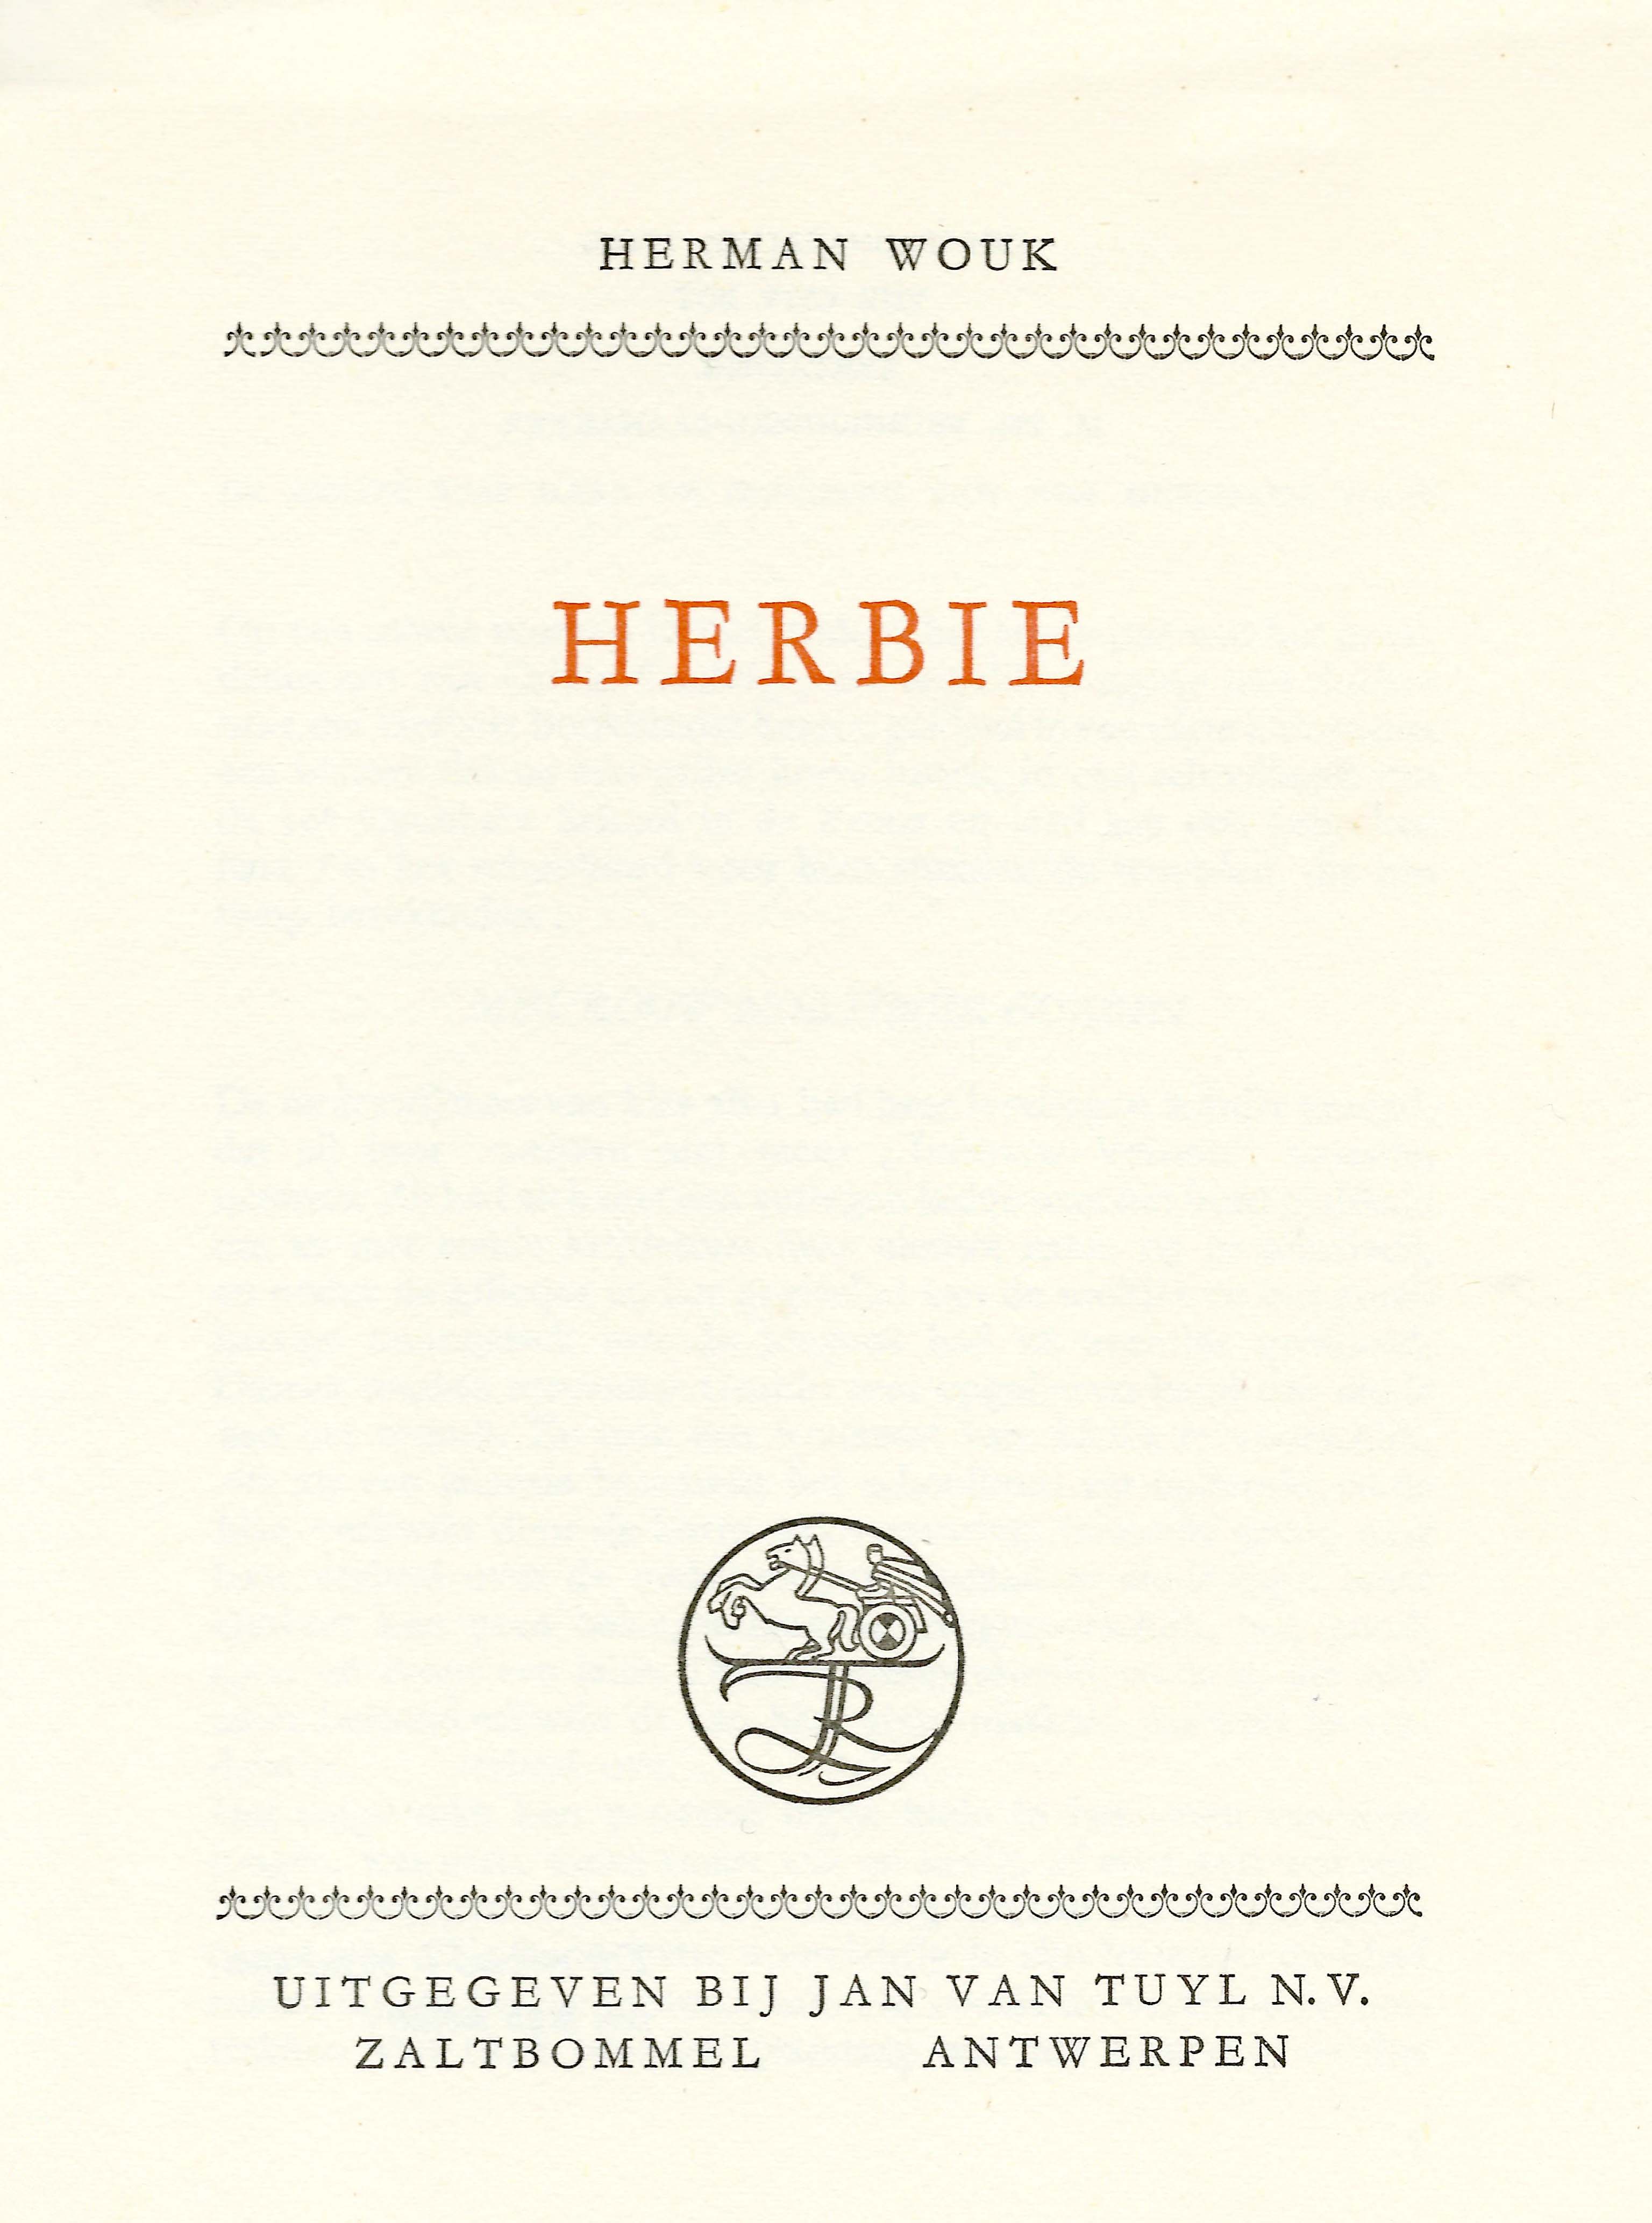 Herman Wouk - Herbie